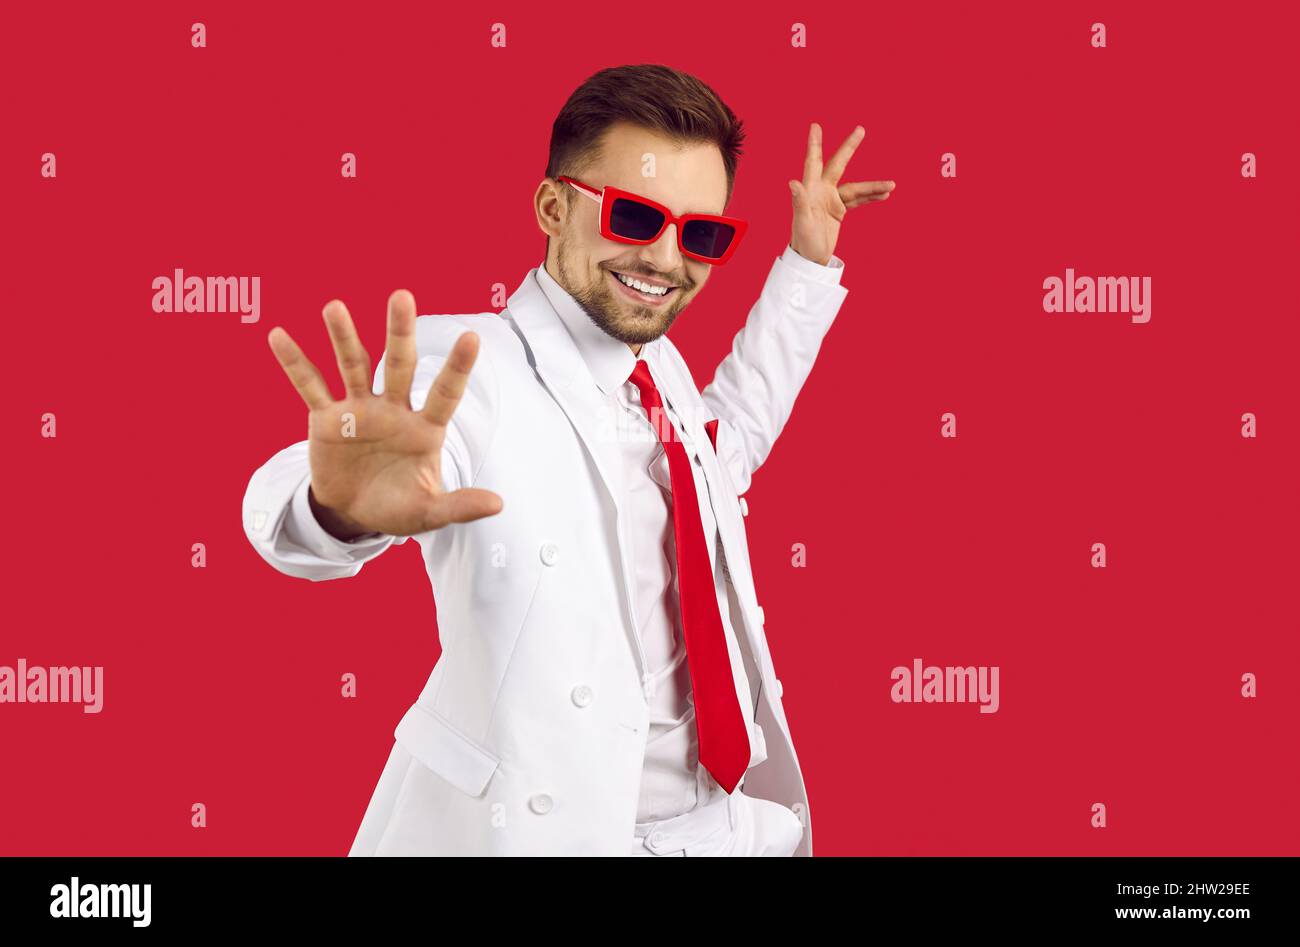 Glücklicher, hübscher Mann mit weißem Anzug und Partybrillen, die auf rotem Hintergrund tanzen Stockfoto